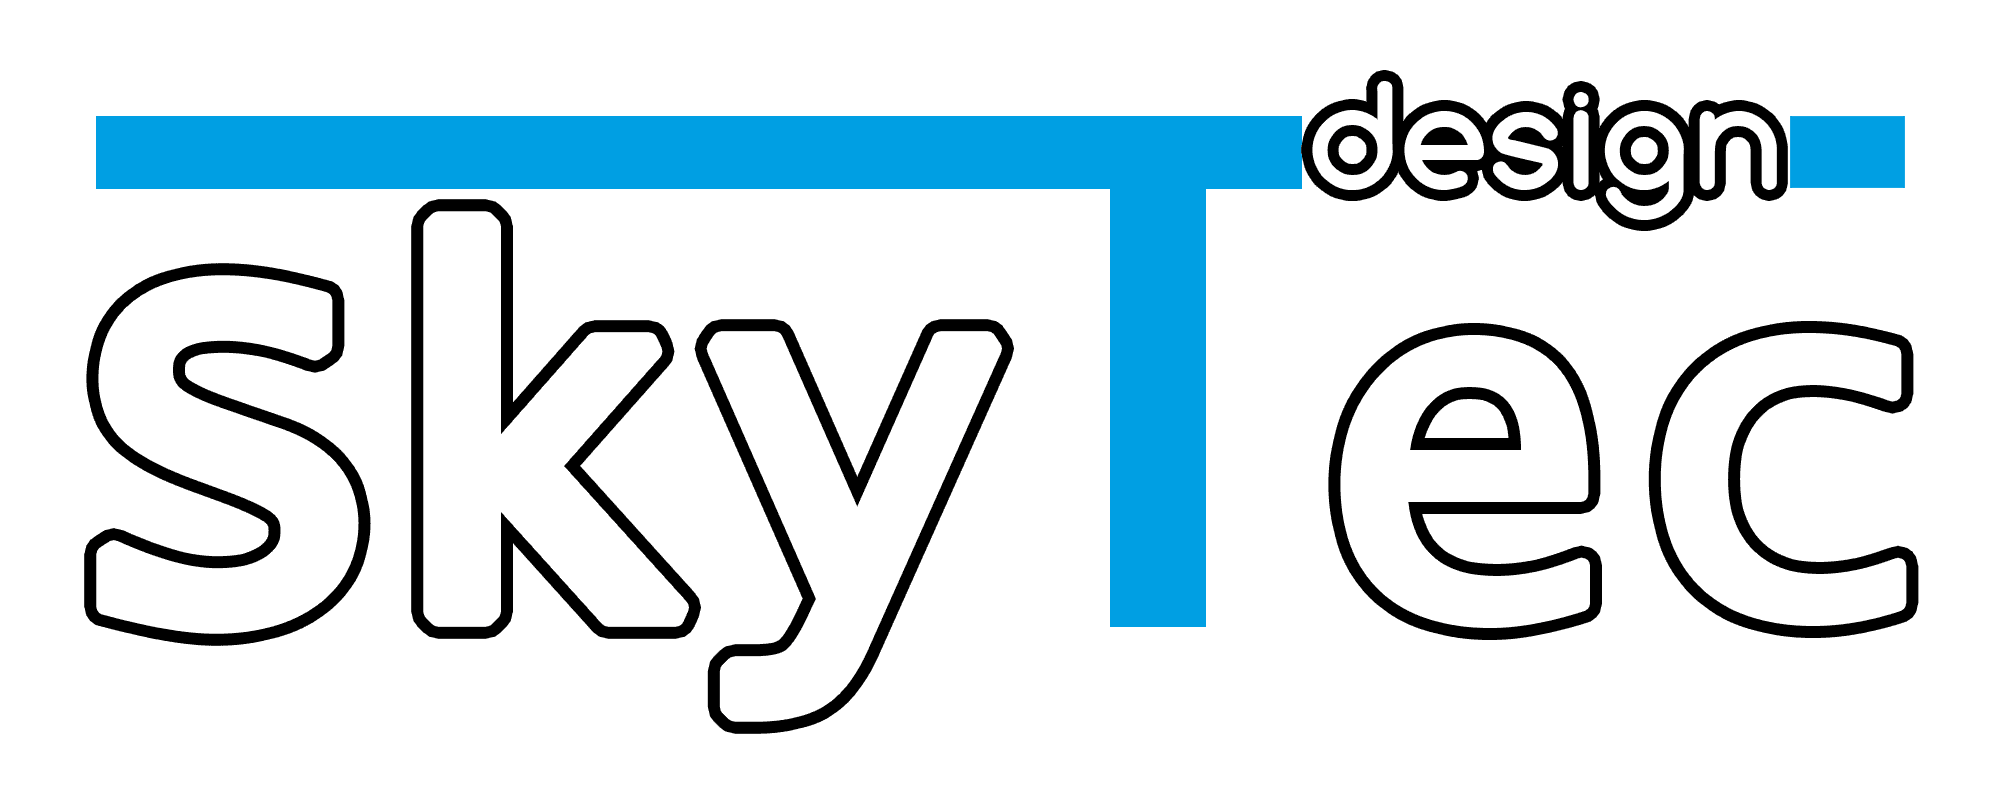 Product Unsere Dienstleistungen - SkyTec-design image